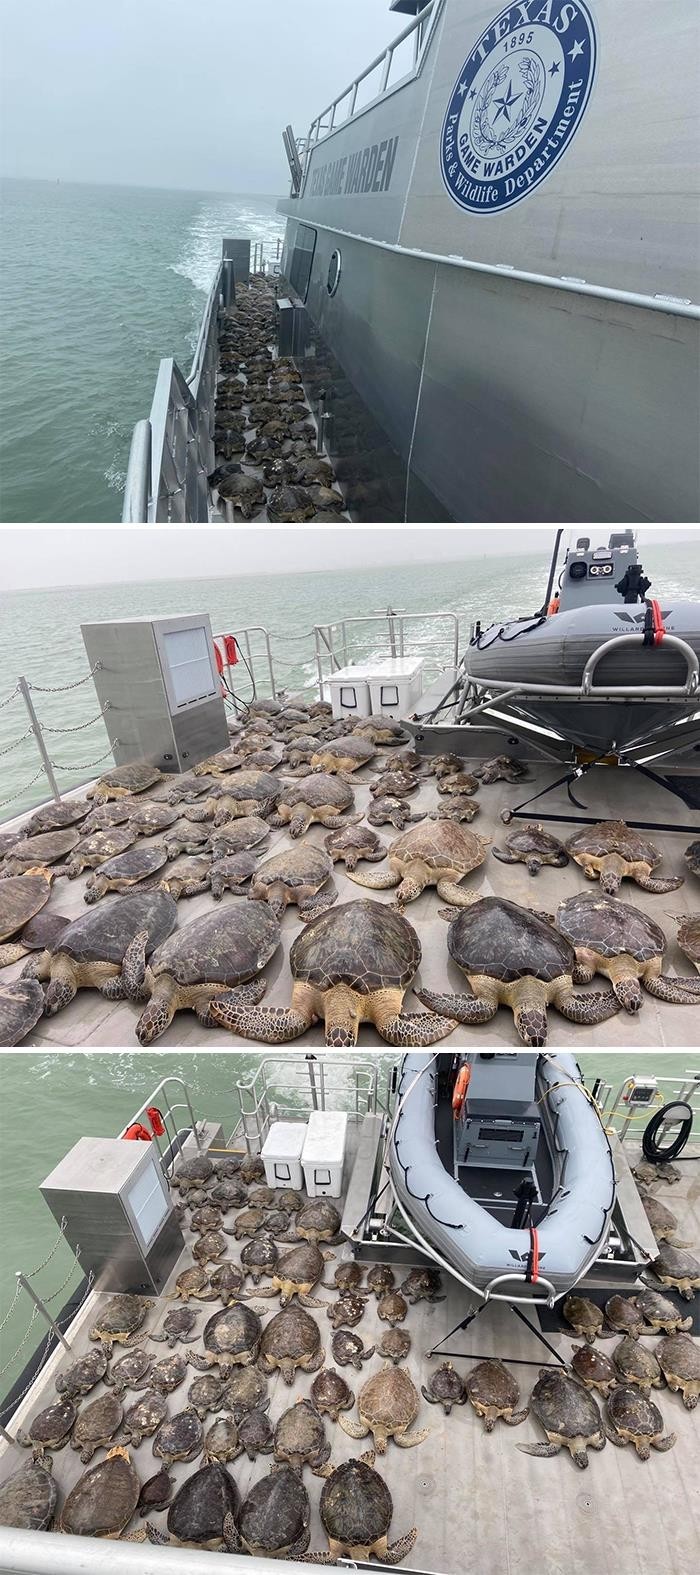 Teksańscy strażnicy łowieccy uratowali 141 żółwi morskich.